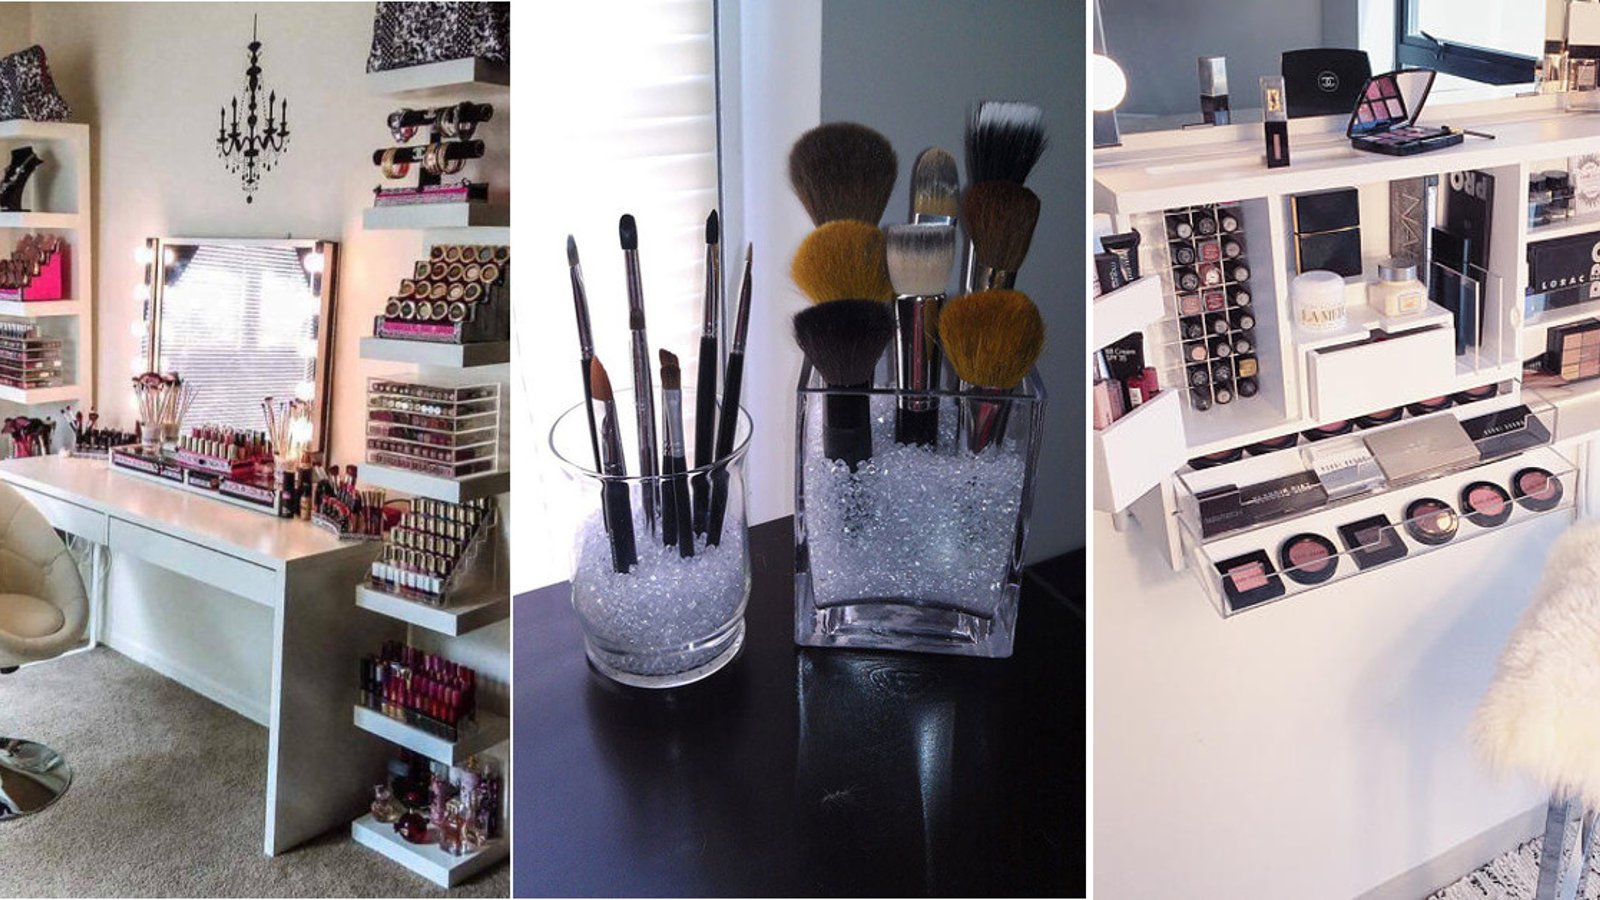 Tu rêves d'une salle de maquillage à la maison? Voici 25 astuces pour t'aider à monter une maquilleuse!  